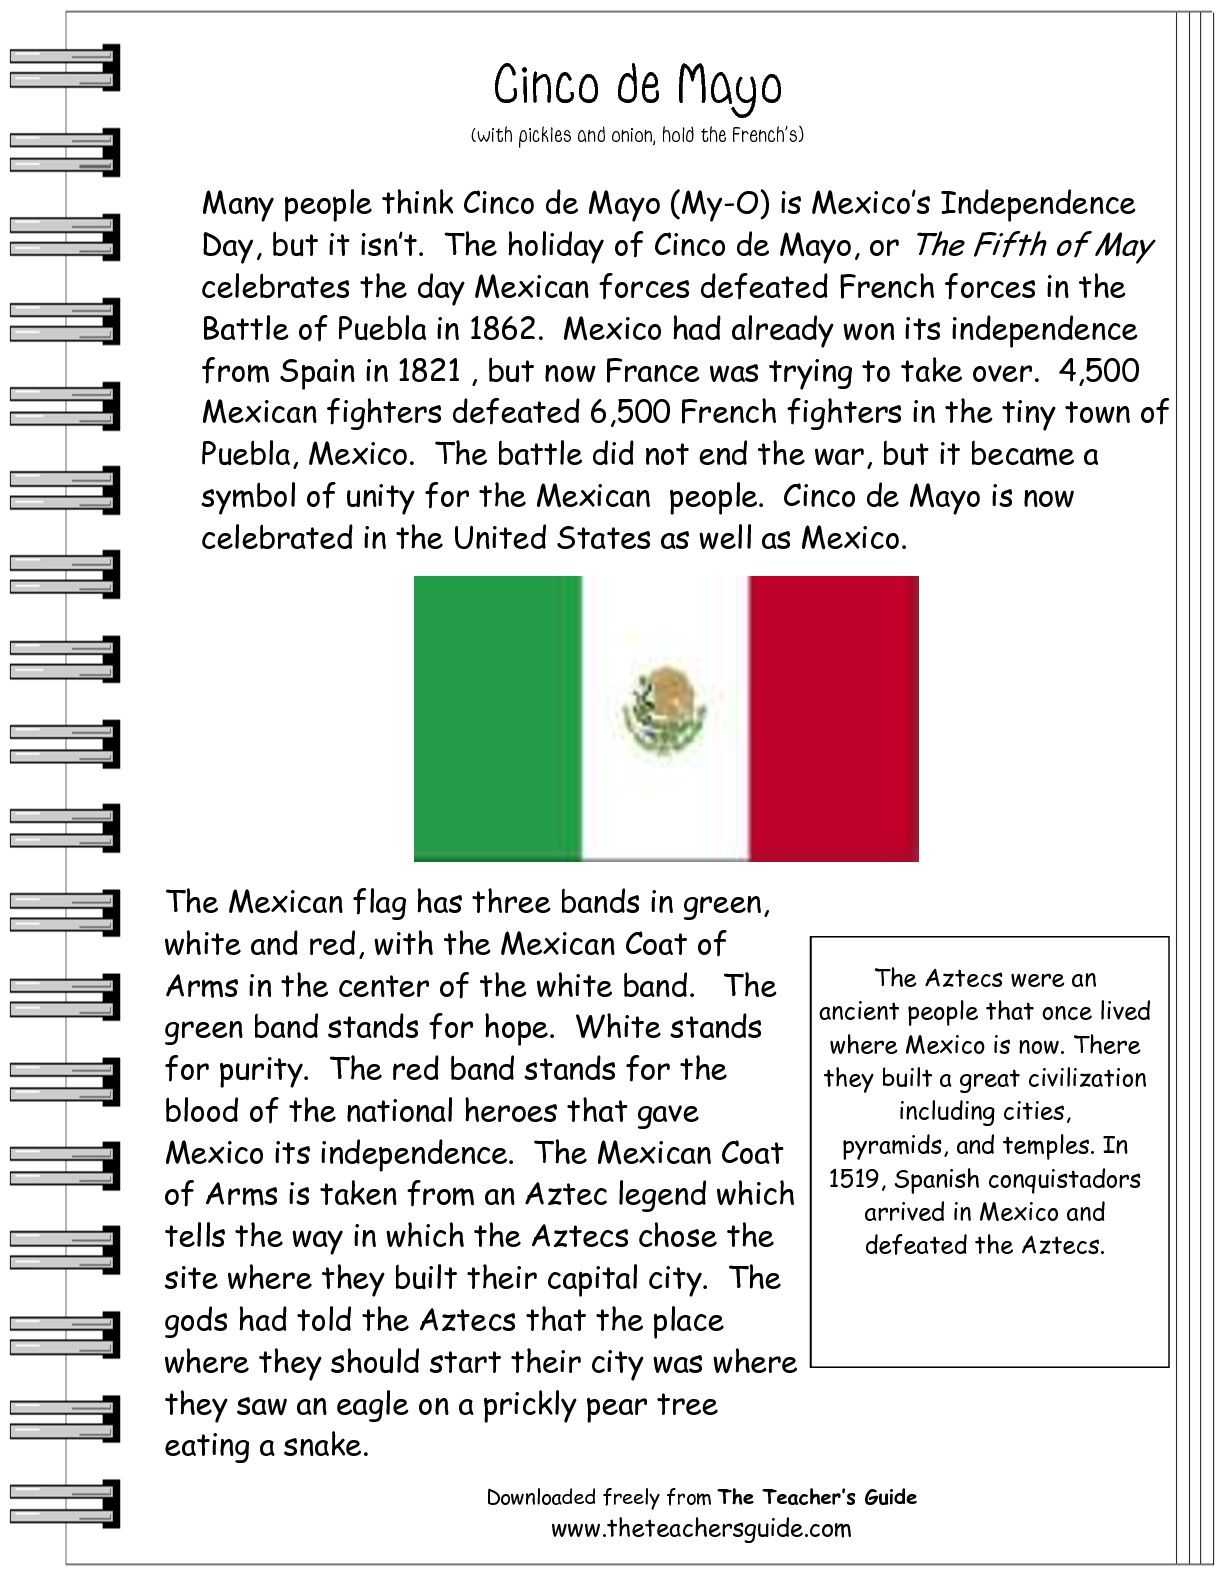 2nd Grade Reading Comprehension Worksheets Pdf with Cinco De Mayo Prehension Worksheet